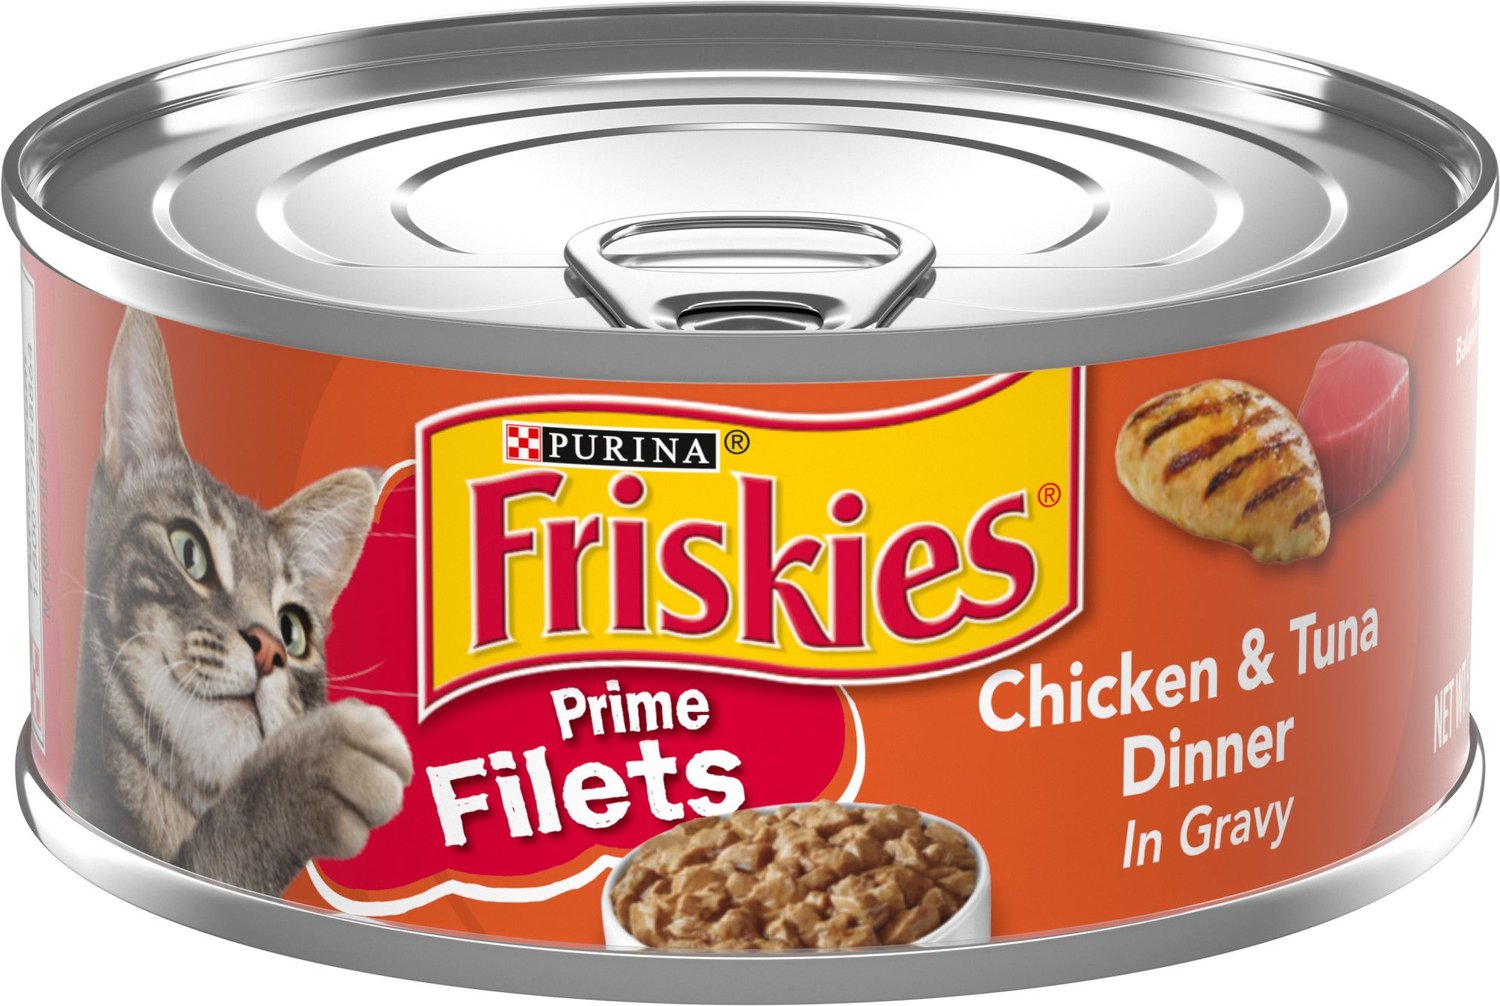 Friskies Prime Filets Chicken & Tuna Dinner in Gravy ...